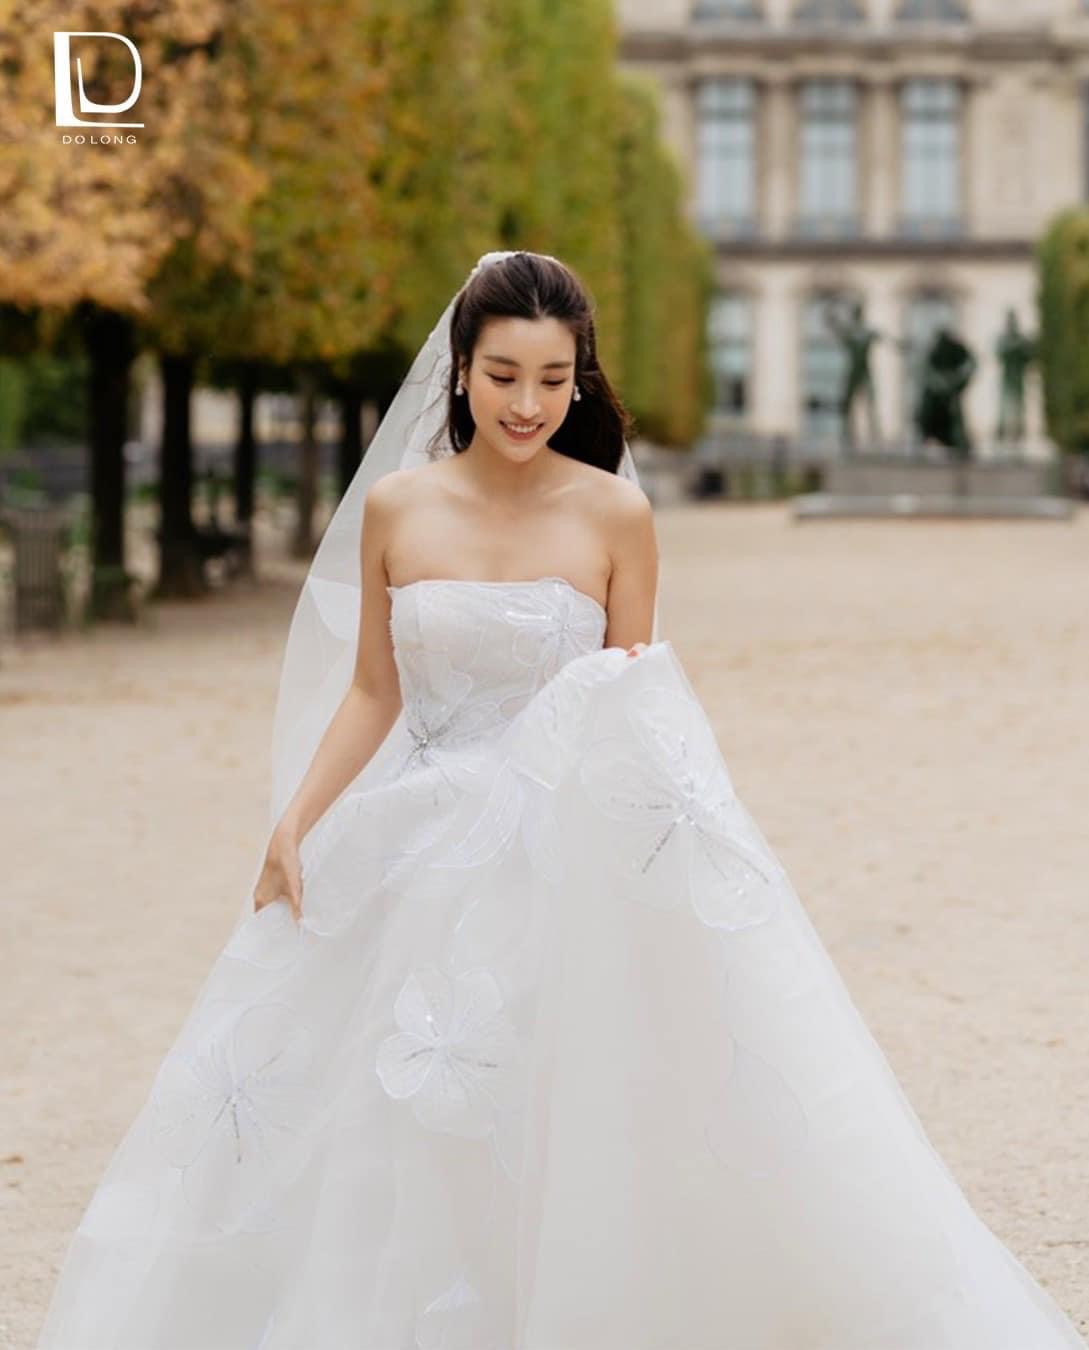 Hoa hậu Đỗ Mỹ Linh xinh đẹp bên chồng trong bộ hình cưới nhẹ nhàng.